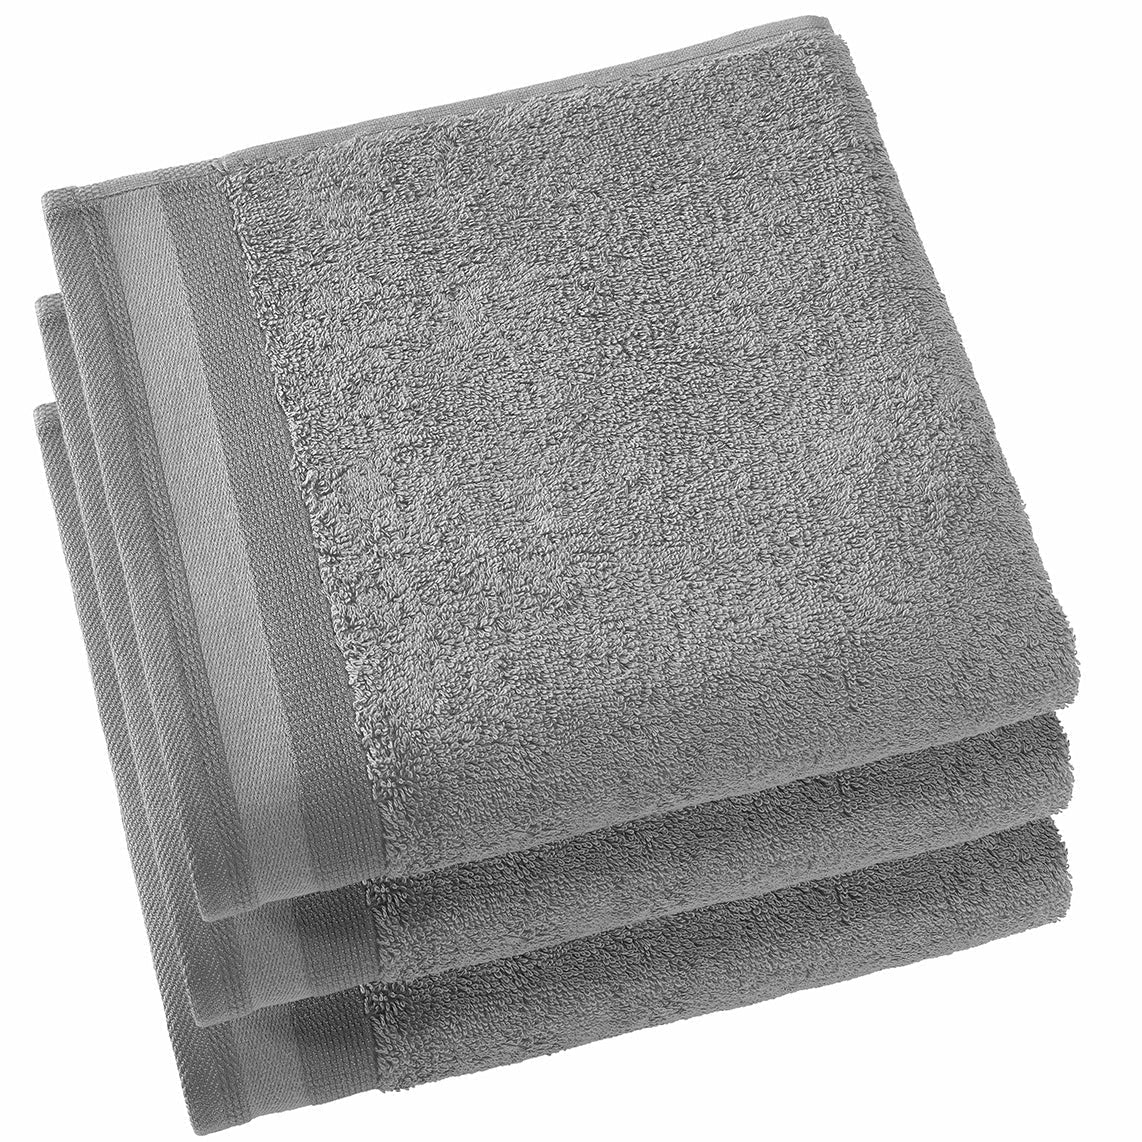 WASHANDJES (6x) - Contessa Steel grey 16 x 21cm Washandje DE WITTE LIETAER Handdoek 50 x 100cm/3 Antraciet 